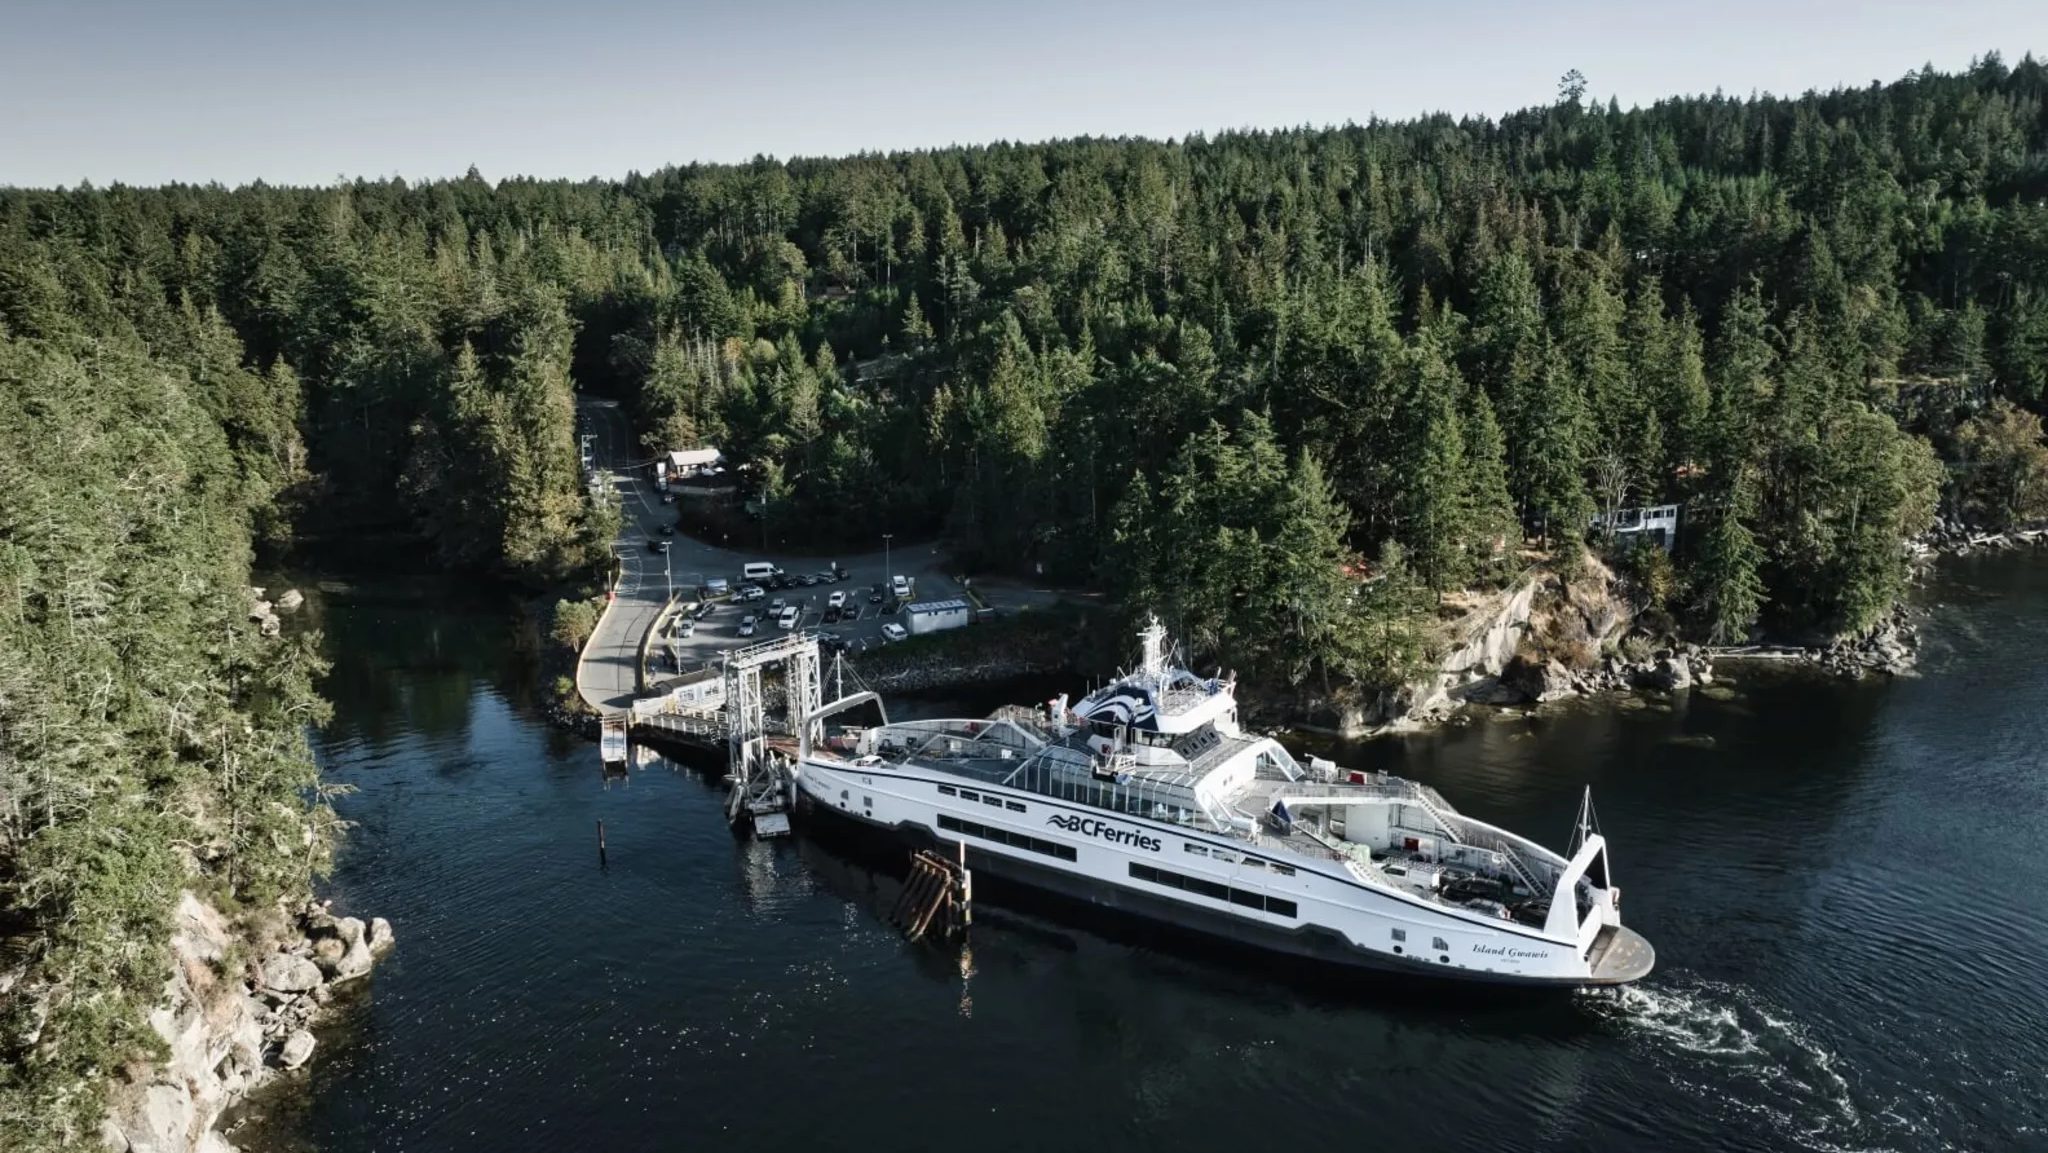 Er varen al 6 veerboten van Damen rond voor het Canadese BC Ferries.